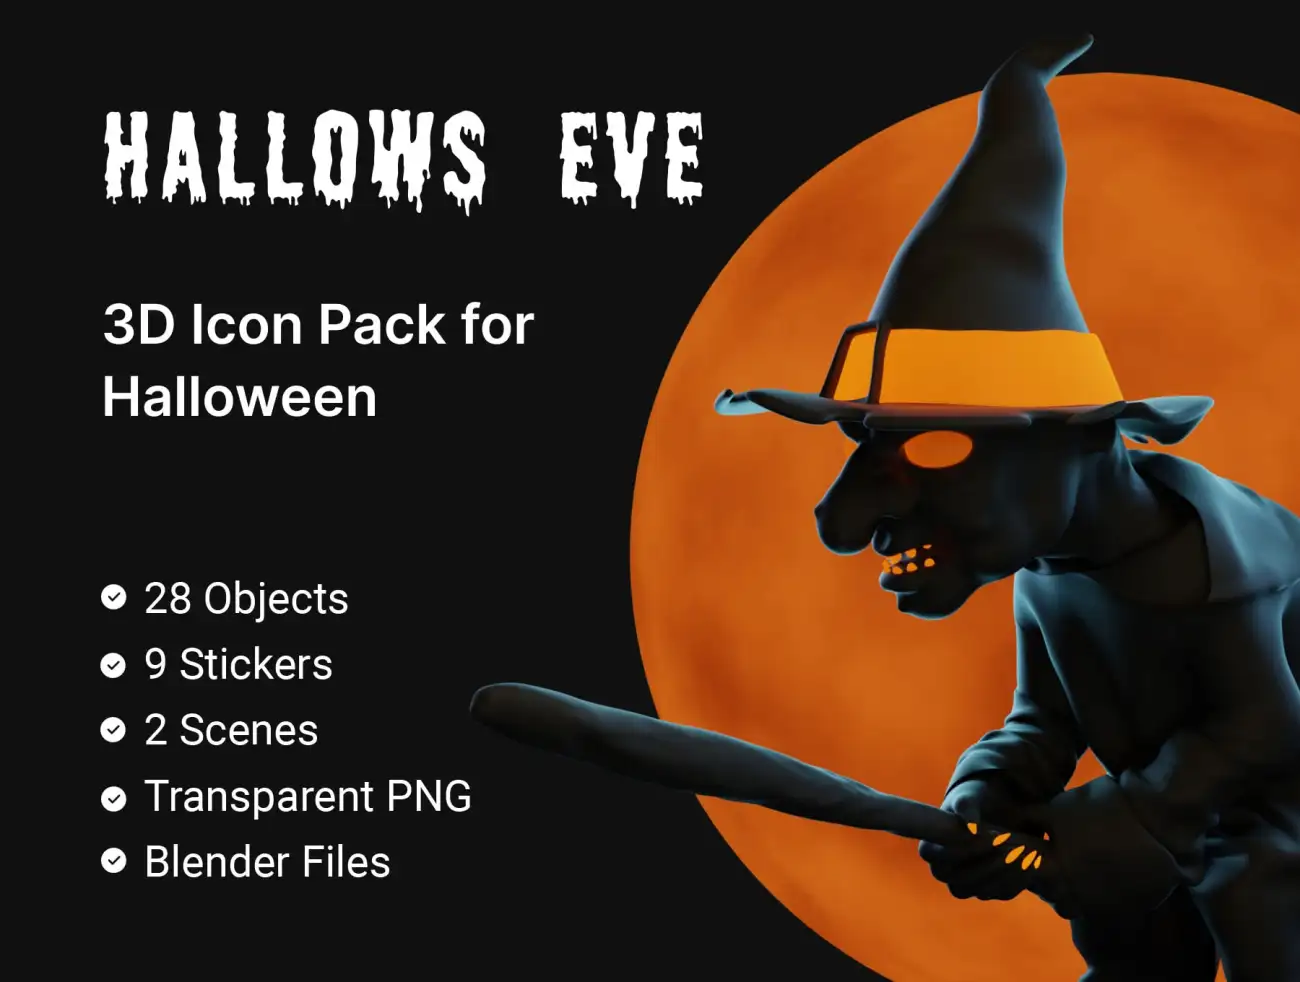 万圣节主题3D图标插图合集 Hallows Eve – Halloween 3D Icon & Sticker Pack插图1